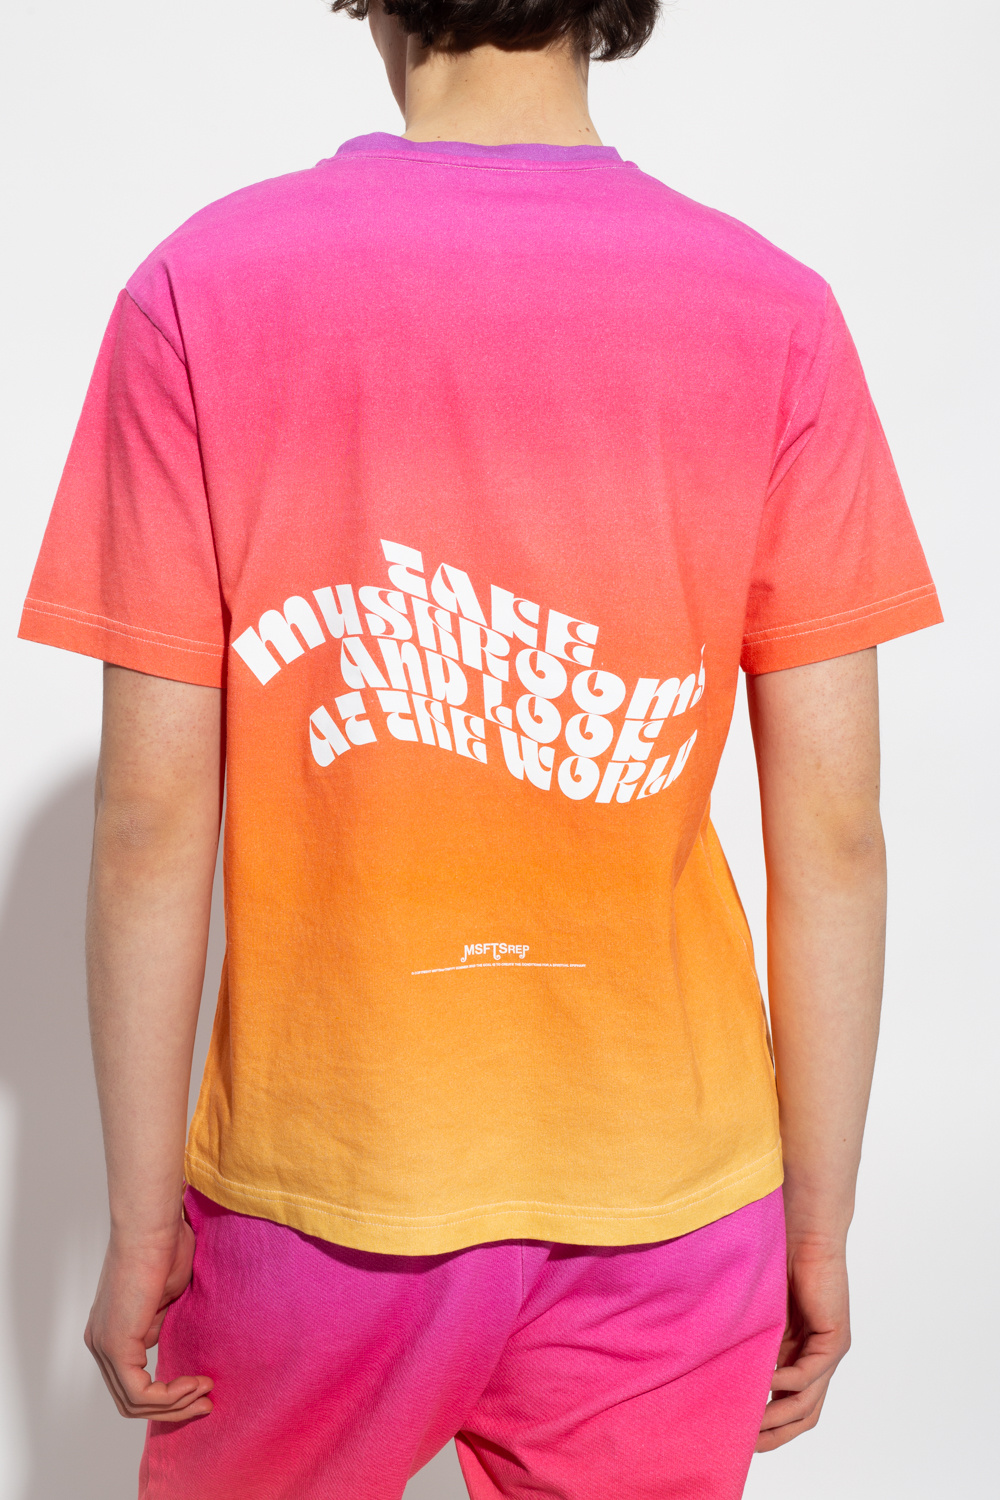 MSFTSrep Gradient T-shirt, Men's Clothing